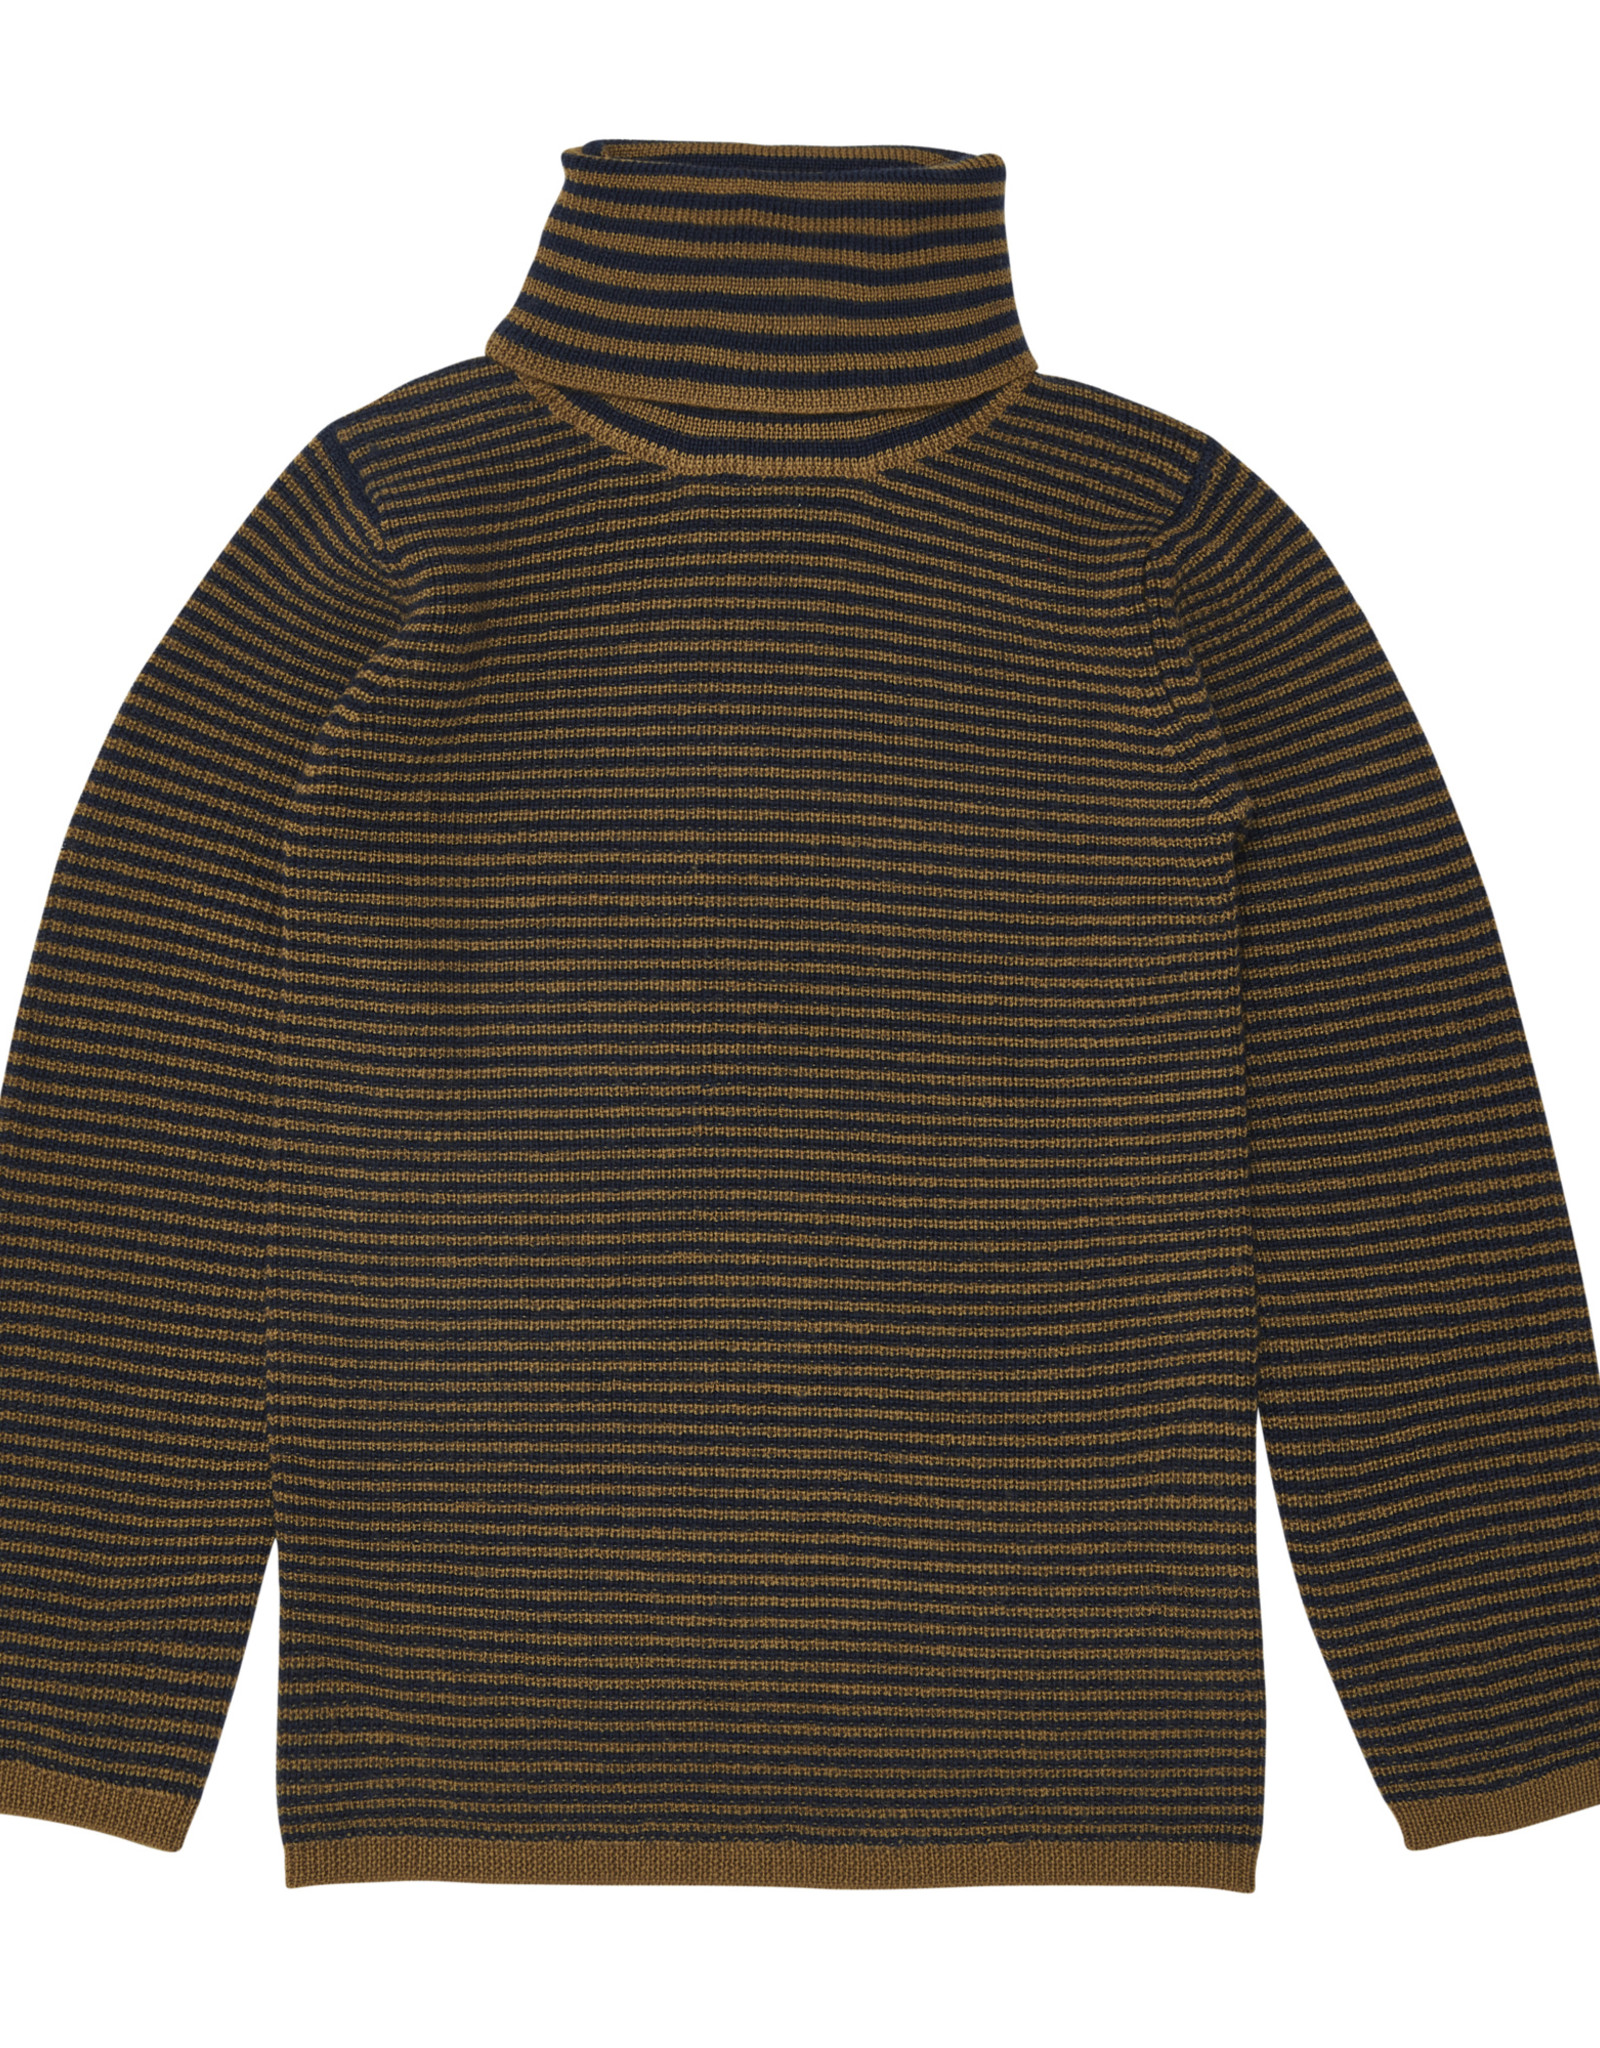 Fub Stripes sweater